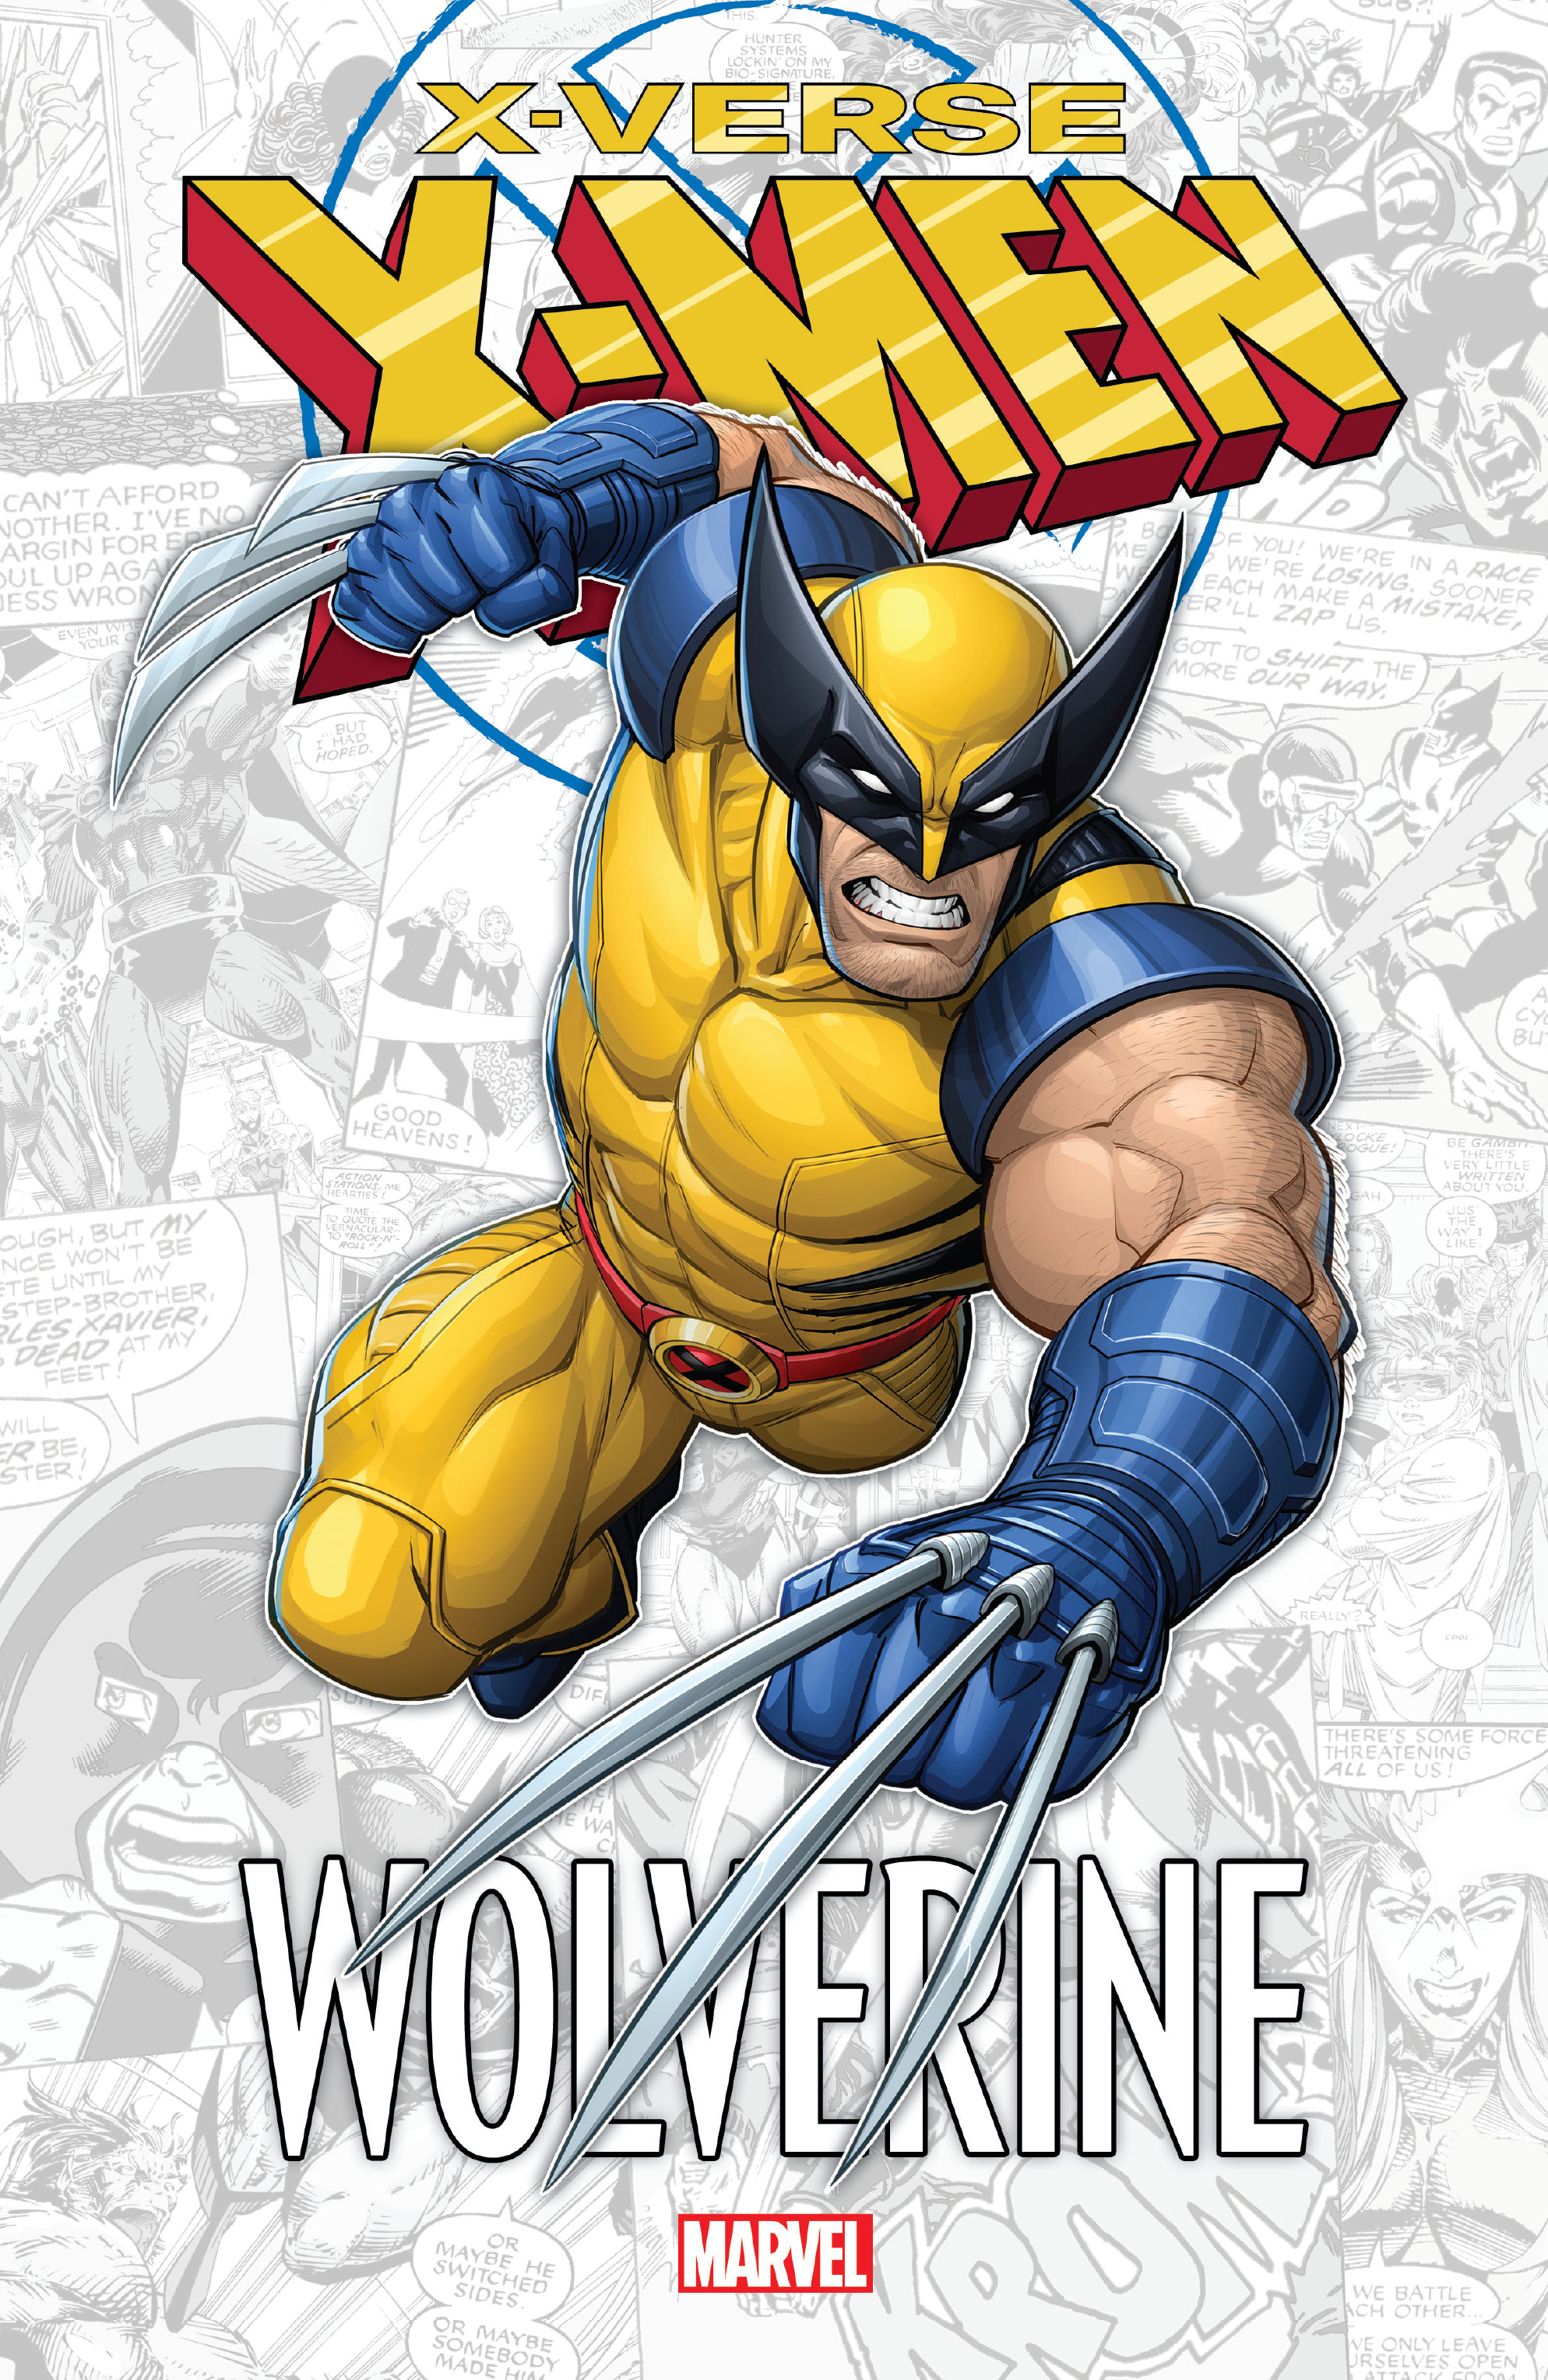 Read online X-Men: X-Verse comic -  Issue # Wolverine - 1